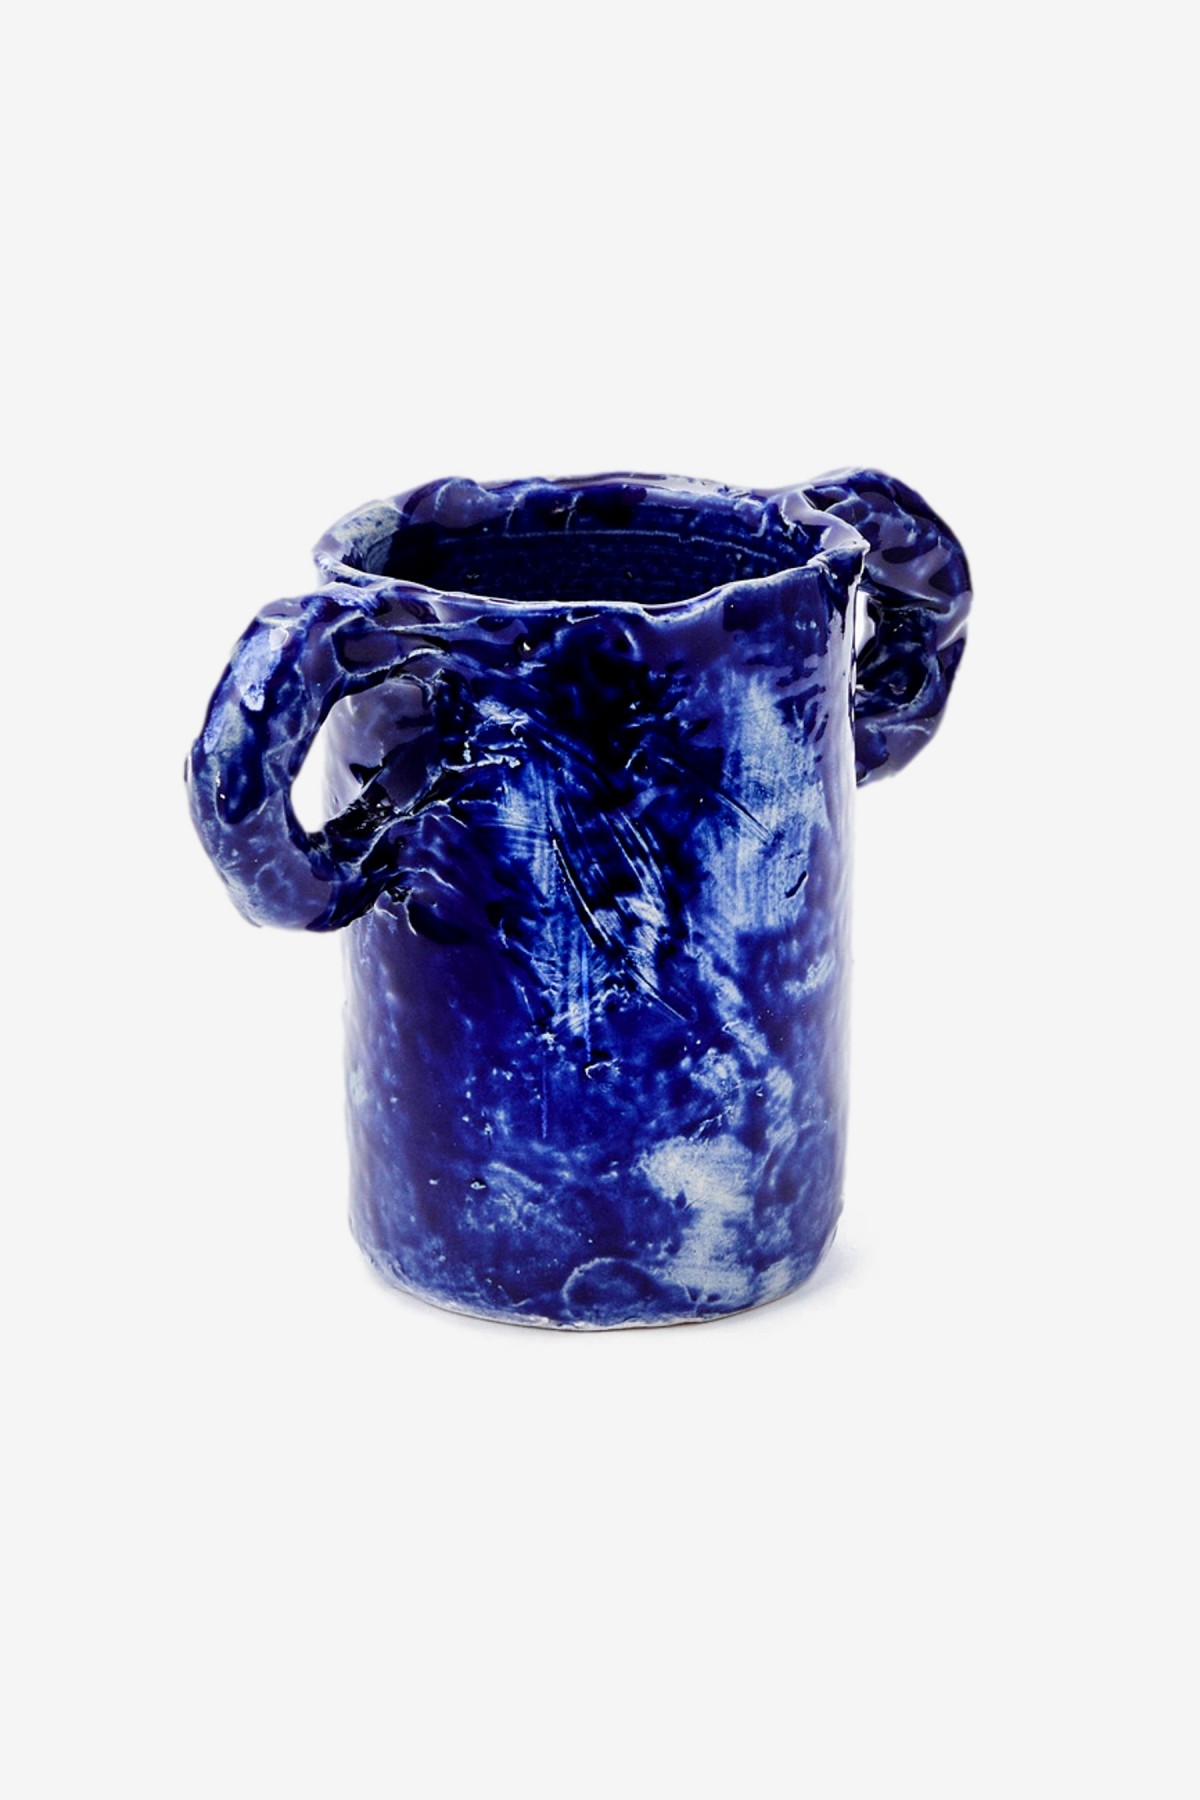 Niko June Studio Vase in Dark Blue